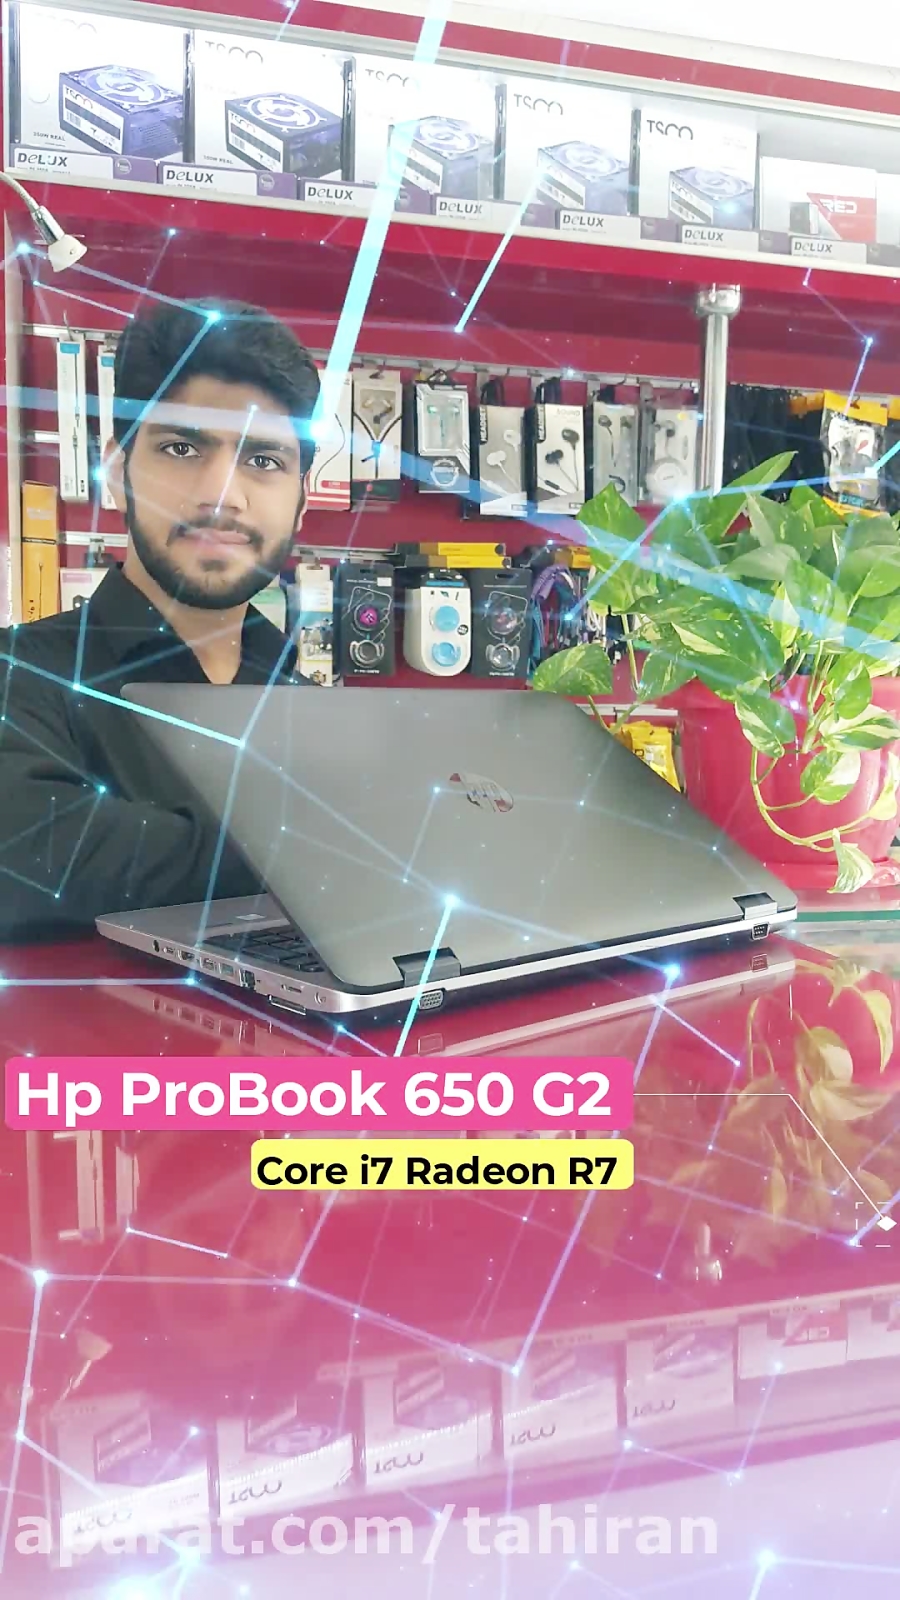 معرفی لپتاپ محبوب و قدرتمند HP ProBook 650 G2 ملقب به "رویای من" زمان127ثانیه